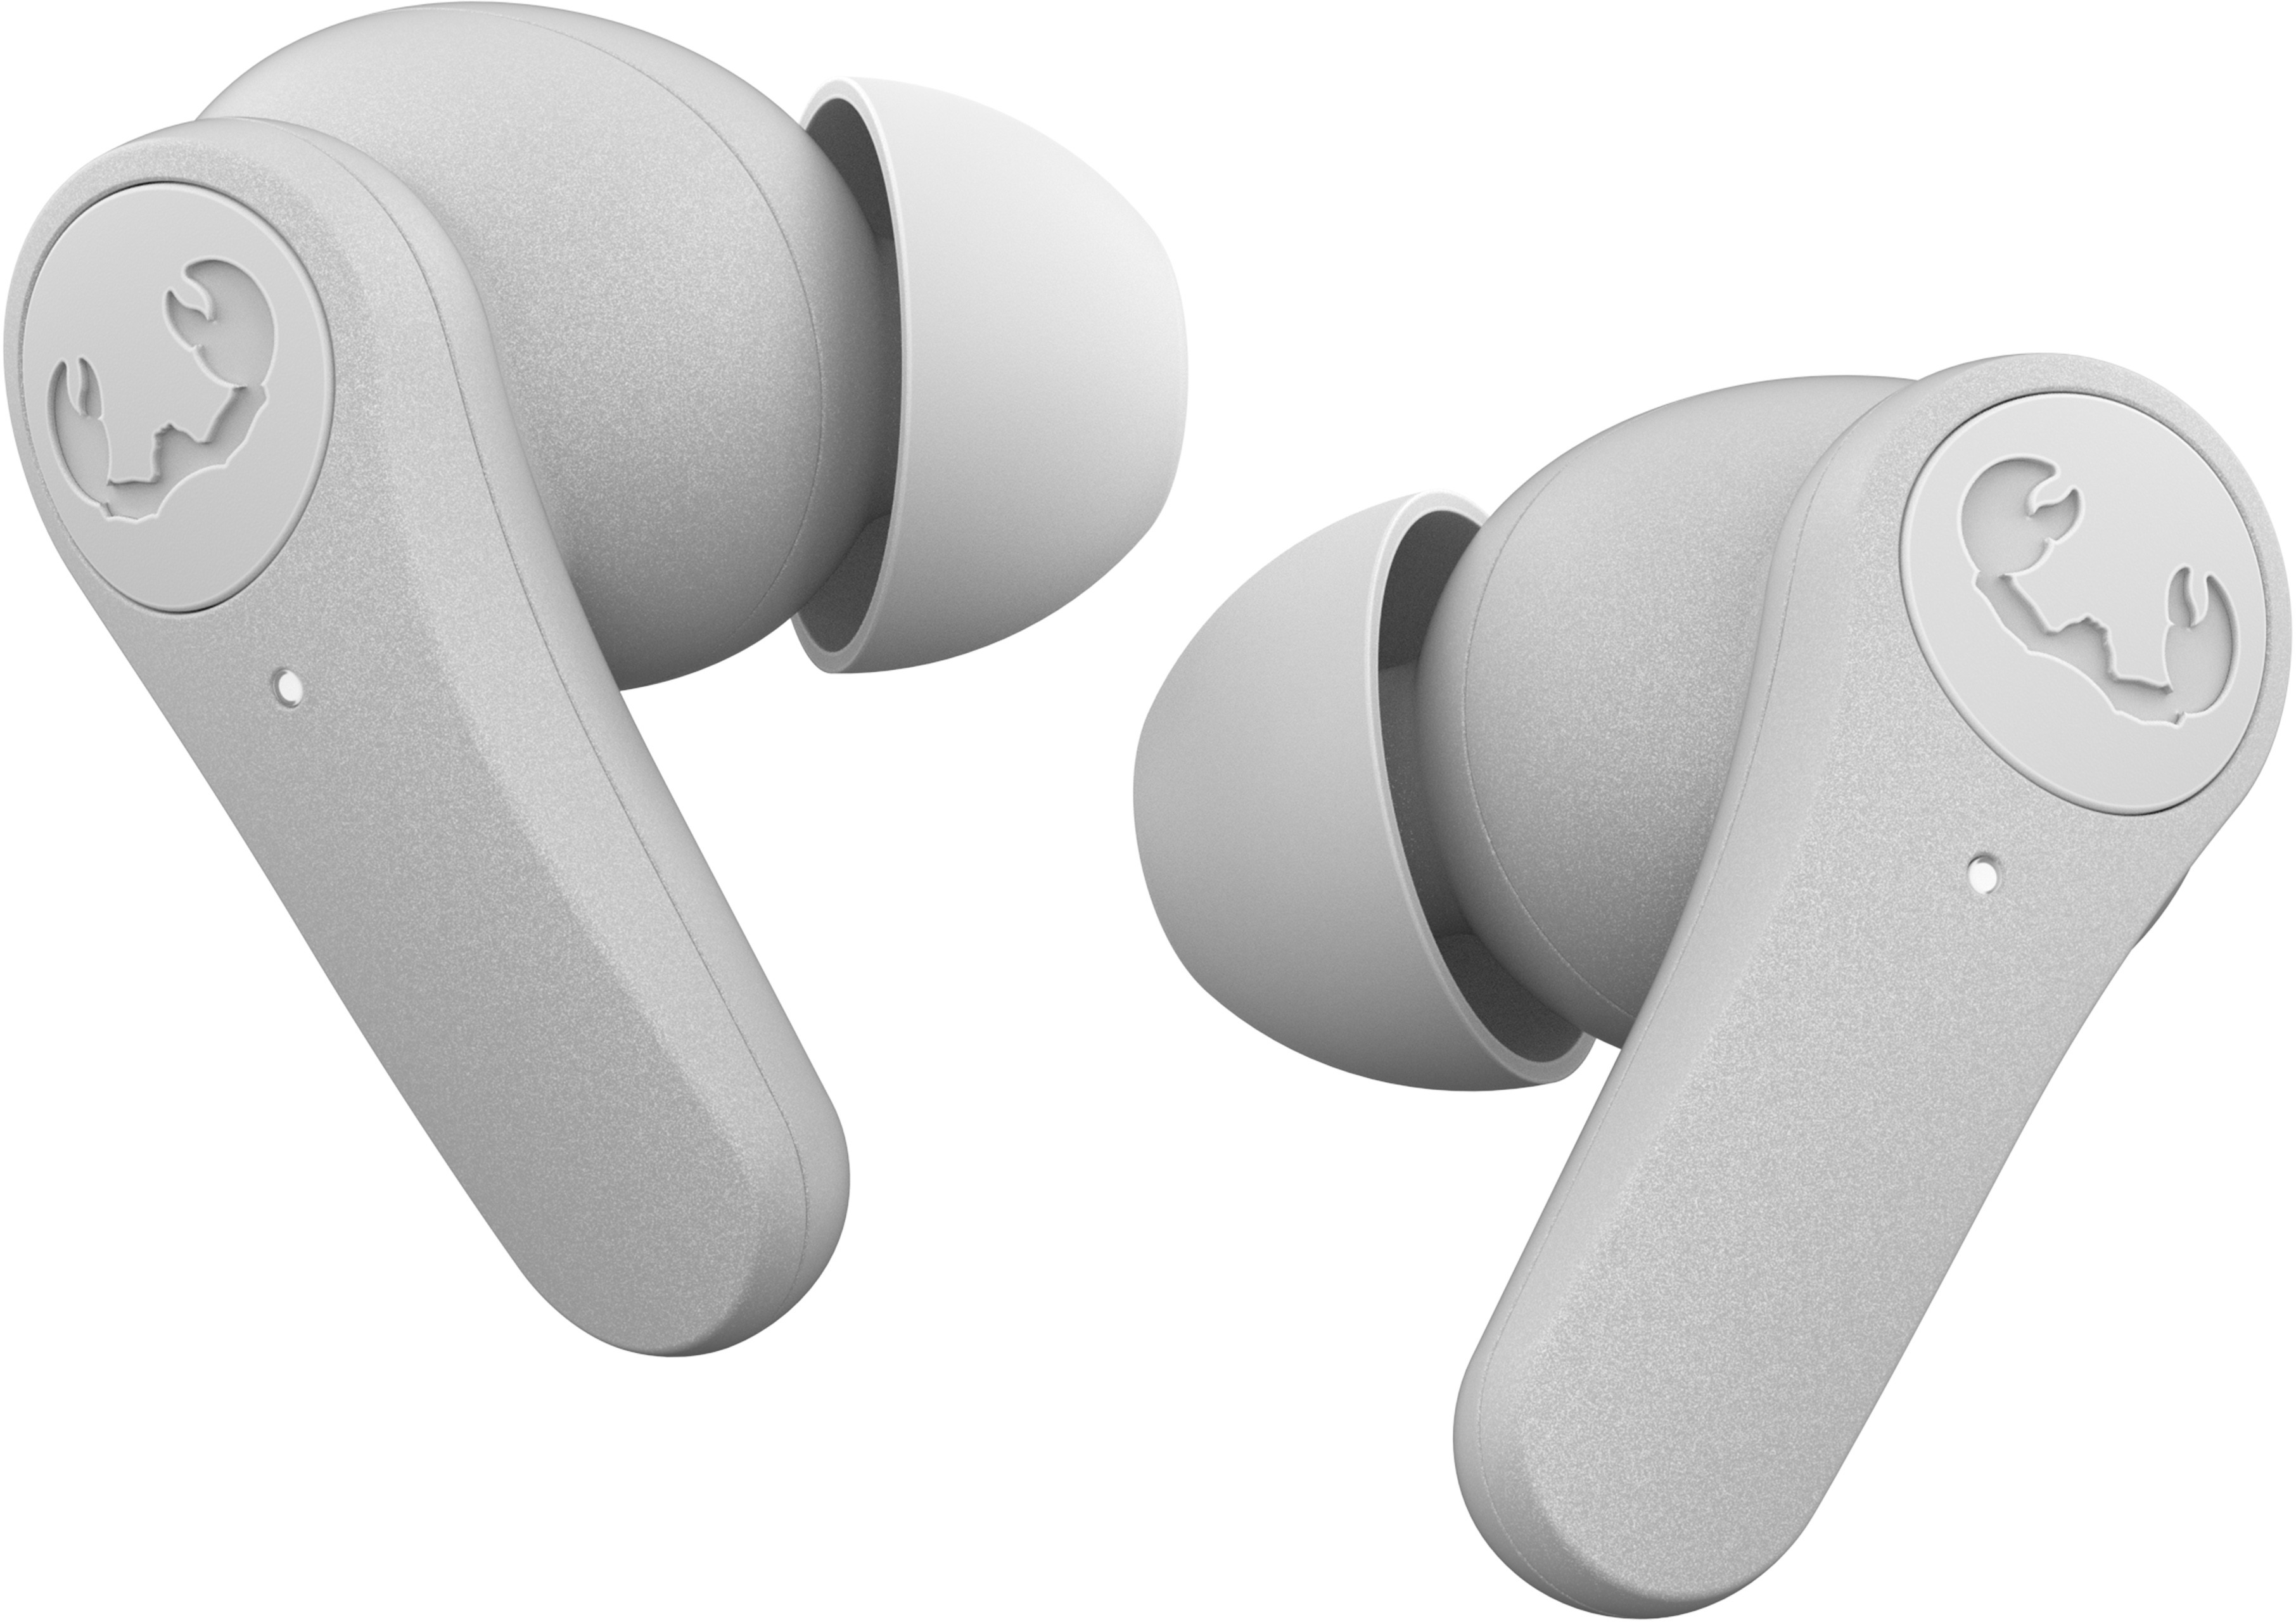 FRESH'N REBEL Twins Rise - TWS earbuds 3TW3500IG Ice Grey Hybrid ANC